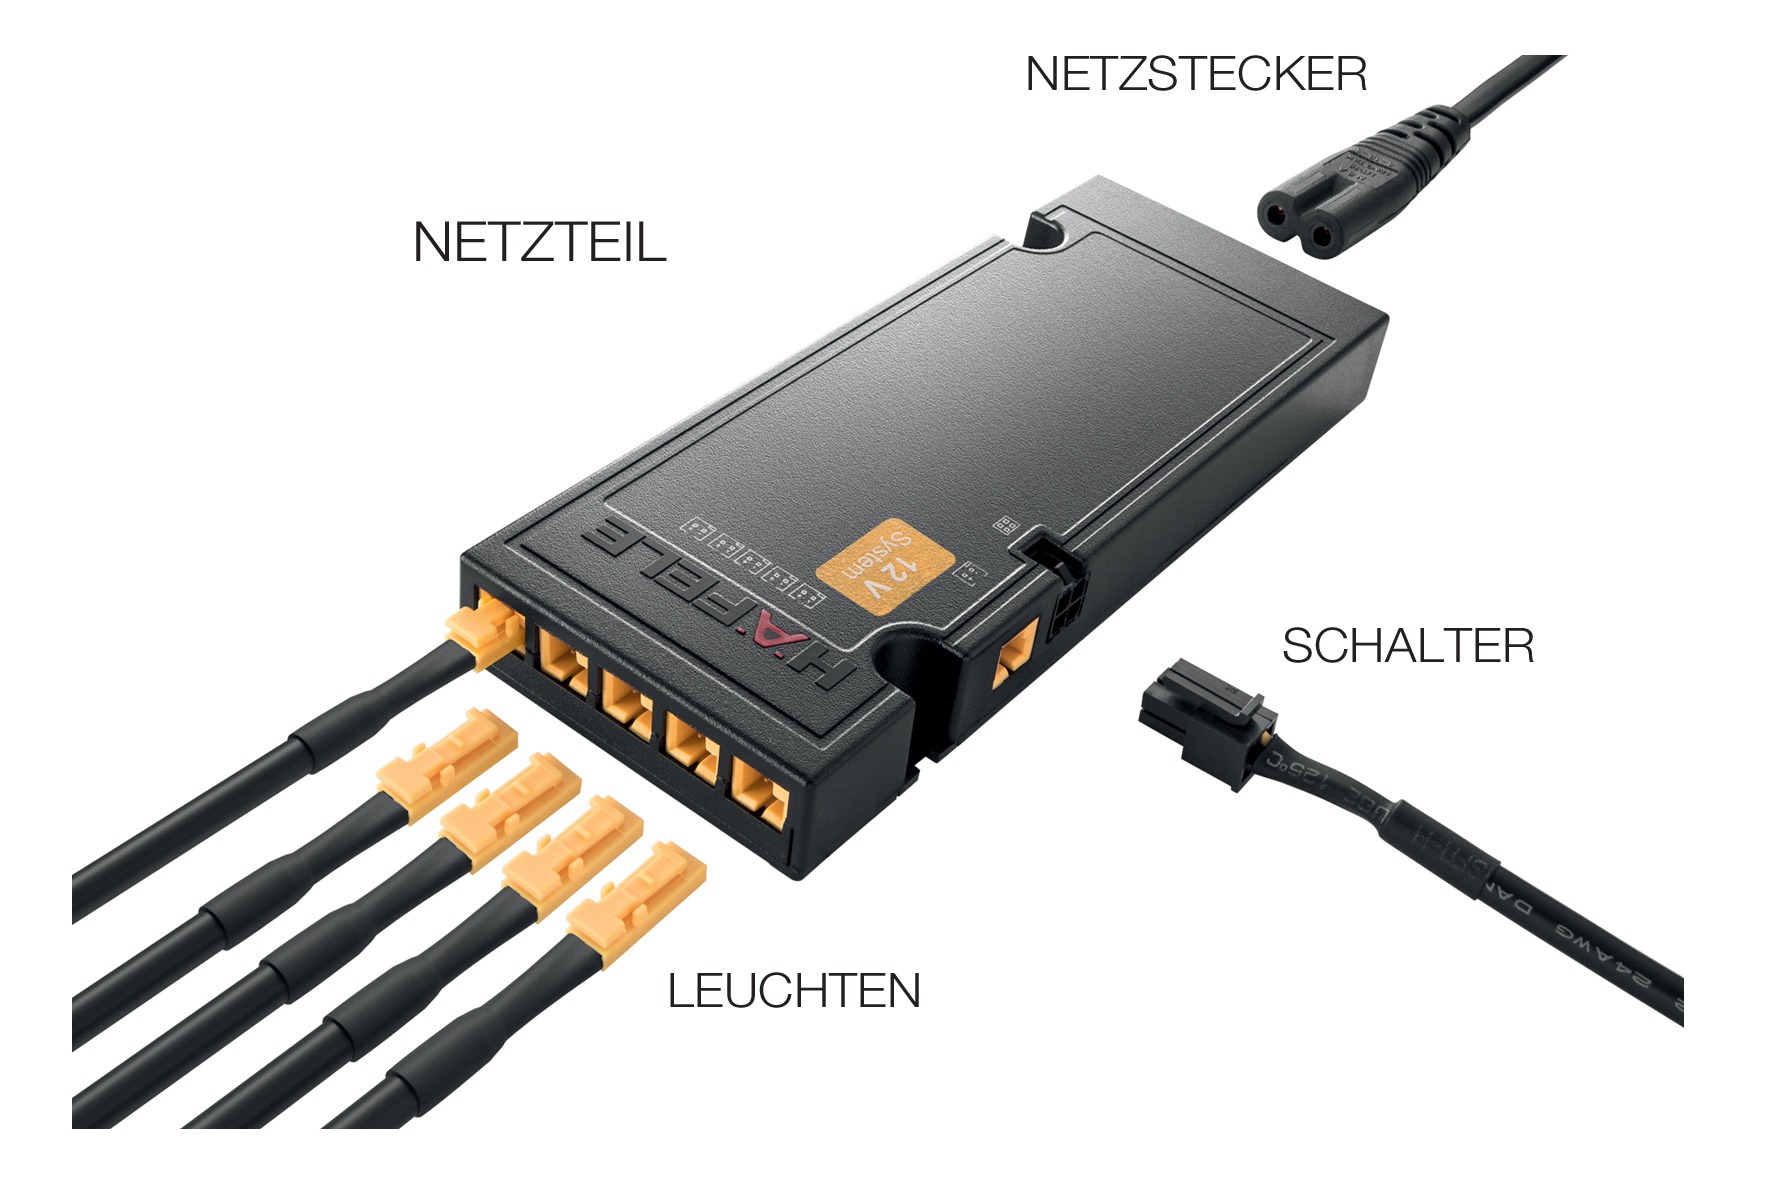 Loox-netdele fungerer som centrale koblingsstationer for LED-lys- og lydkomponenter fra Häfele. Meget let og sikker installation for alle med plug-and-play.